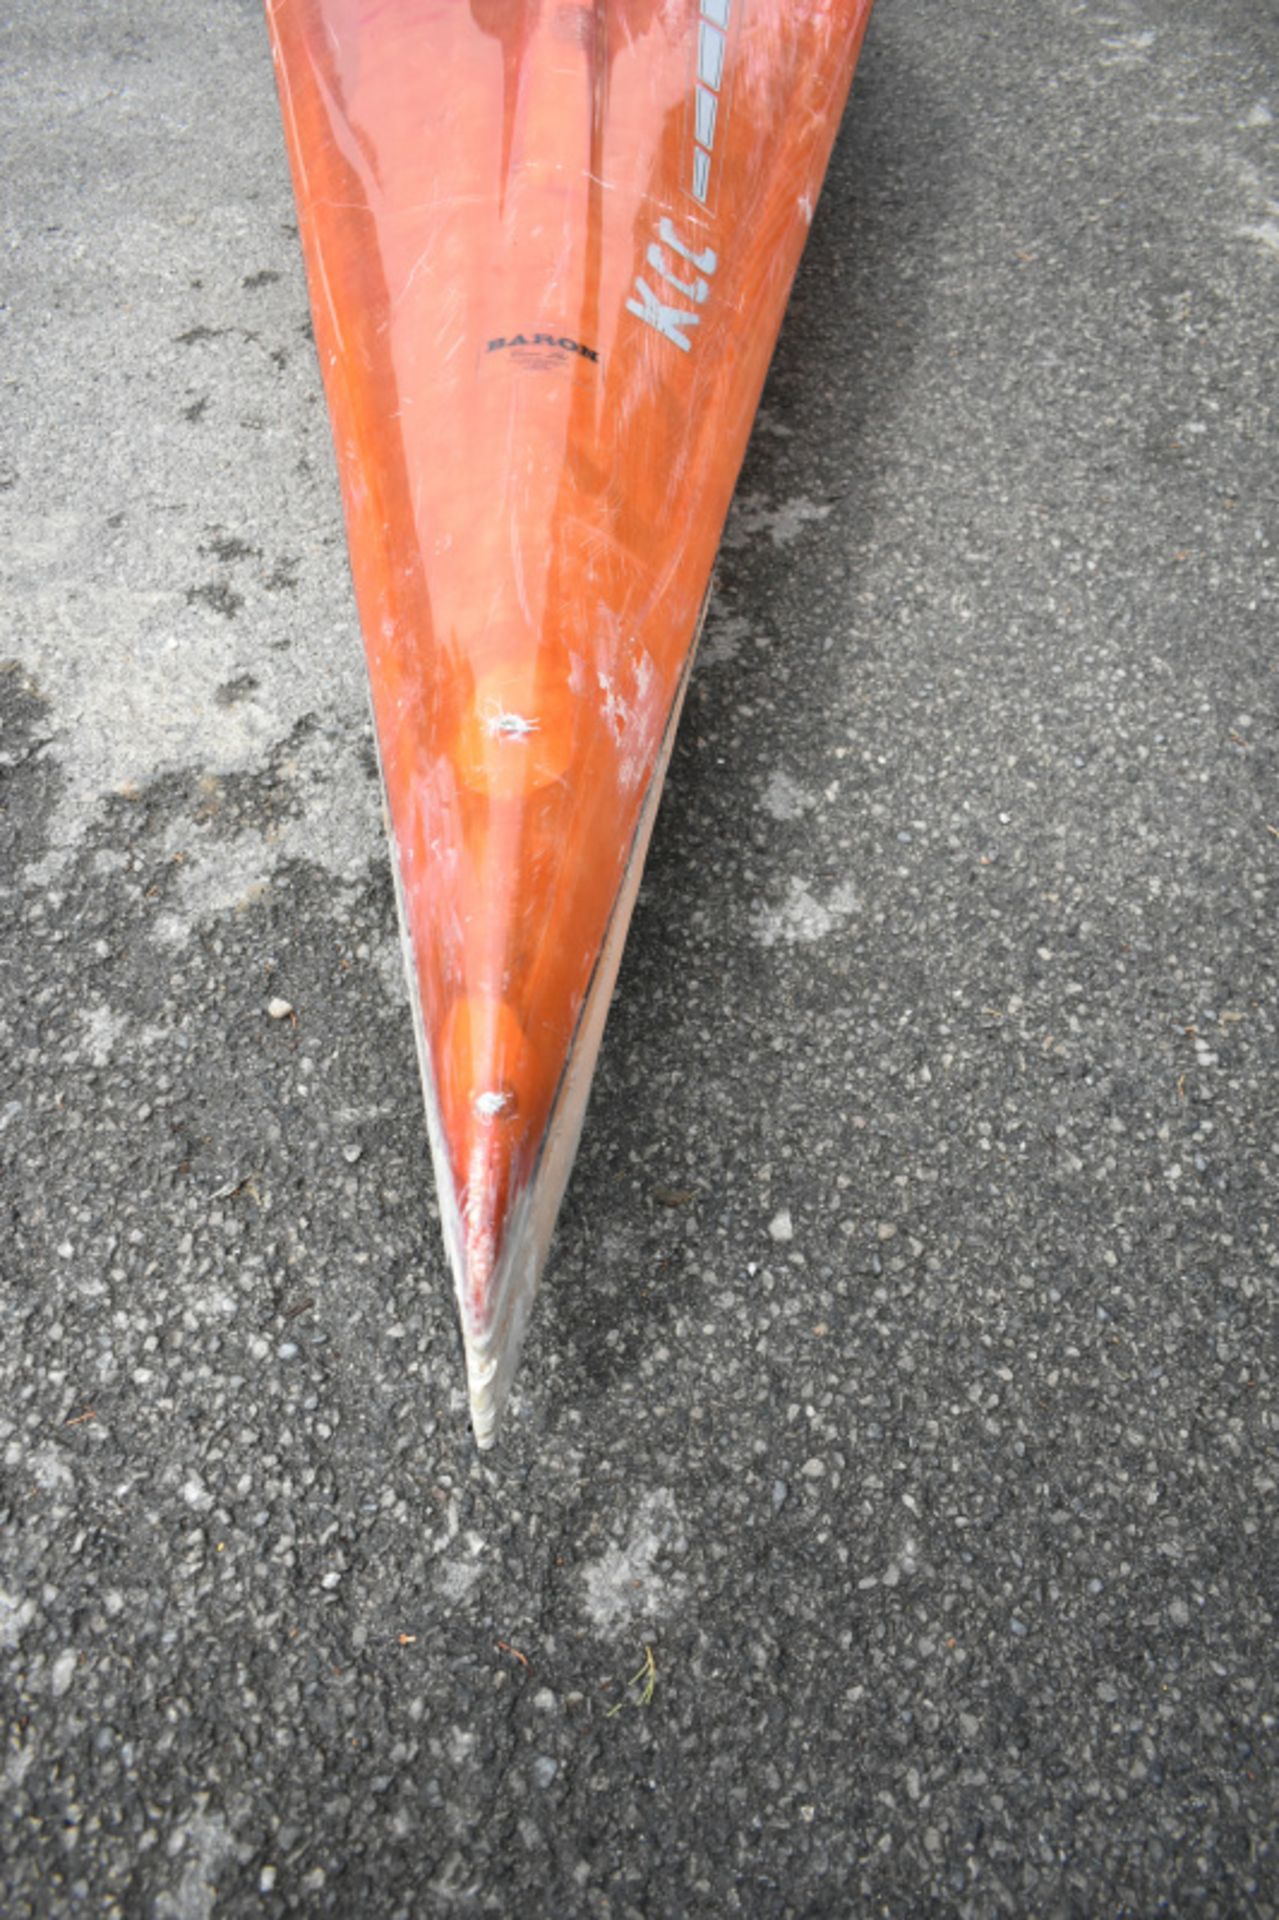 Baron Marlin Kayak - orange - no paddles - Image 6 of 13